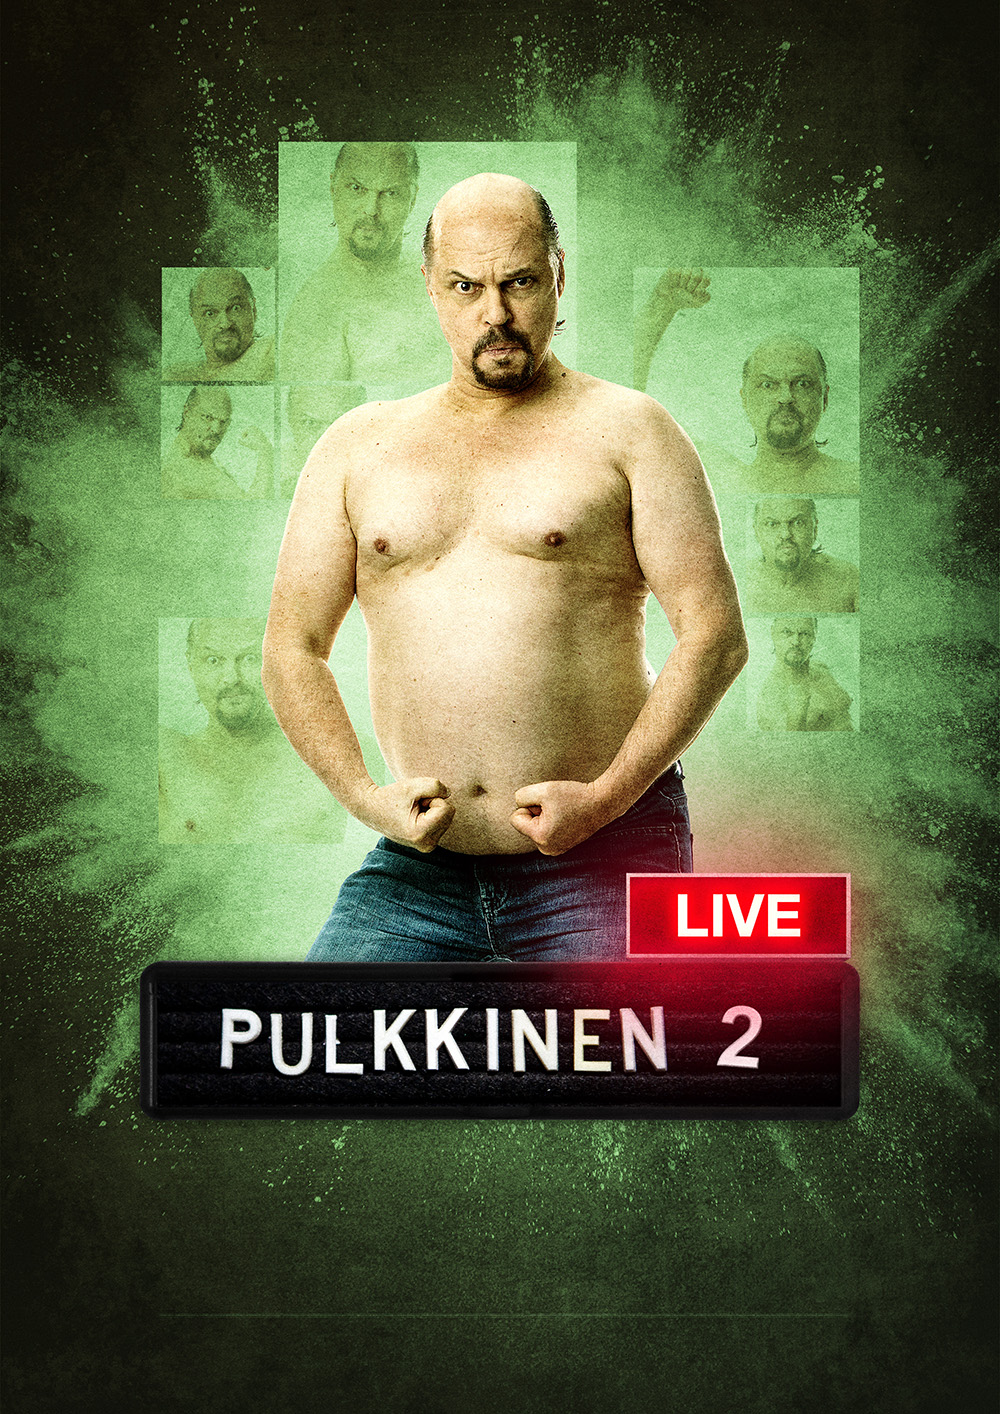 Pulkkinen Live 2 töräyttää Kangasala-talon lavalle Pulkkisen kakkoskauden hahmot tiukasti aikaamme pureutuvissa sketseissä 6.4.2023.